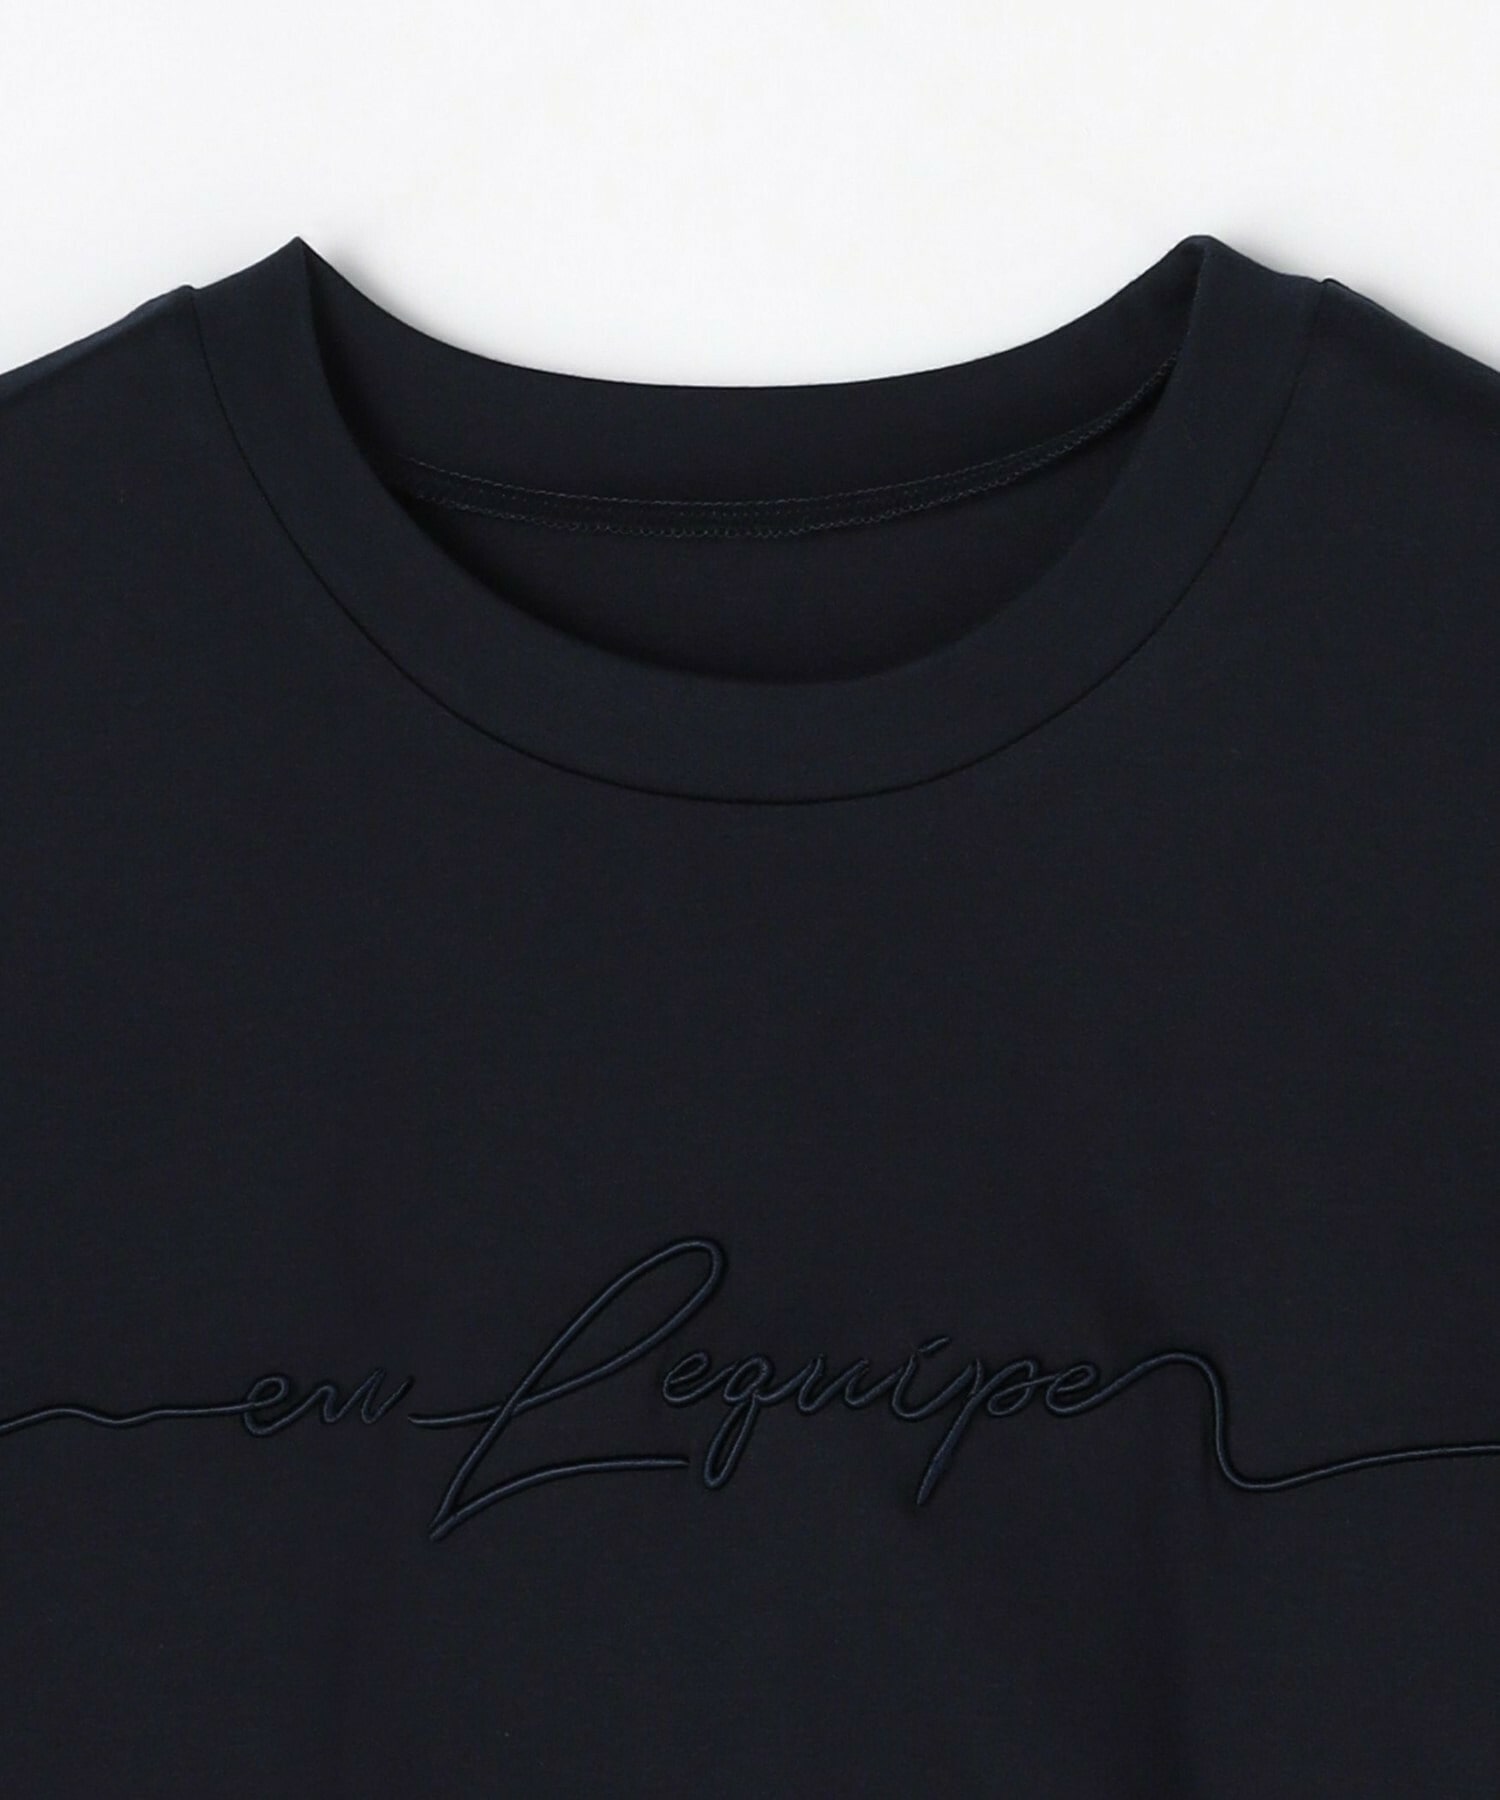 【L'EQUIPE】ロゴ刺繍Tシャツ 詳細画像 ネイビー 9